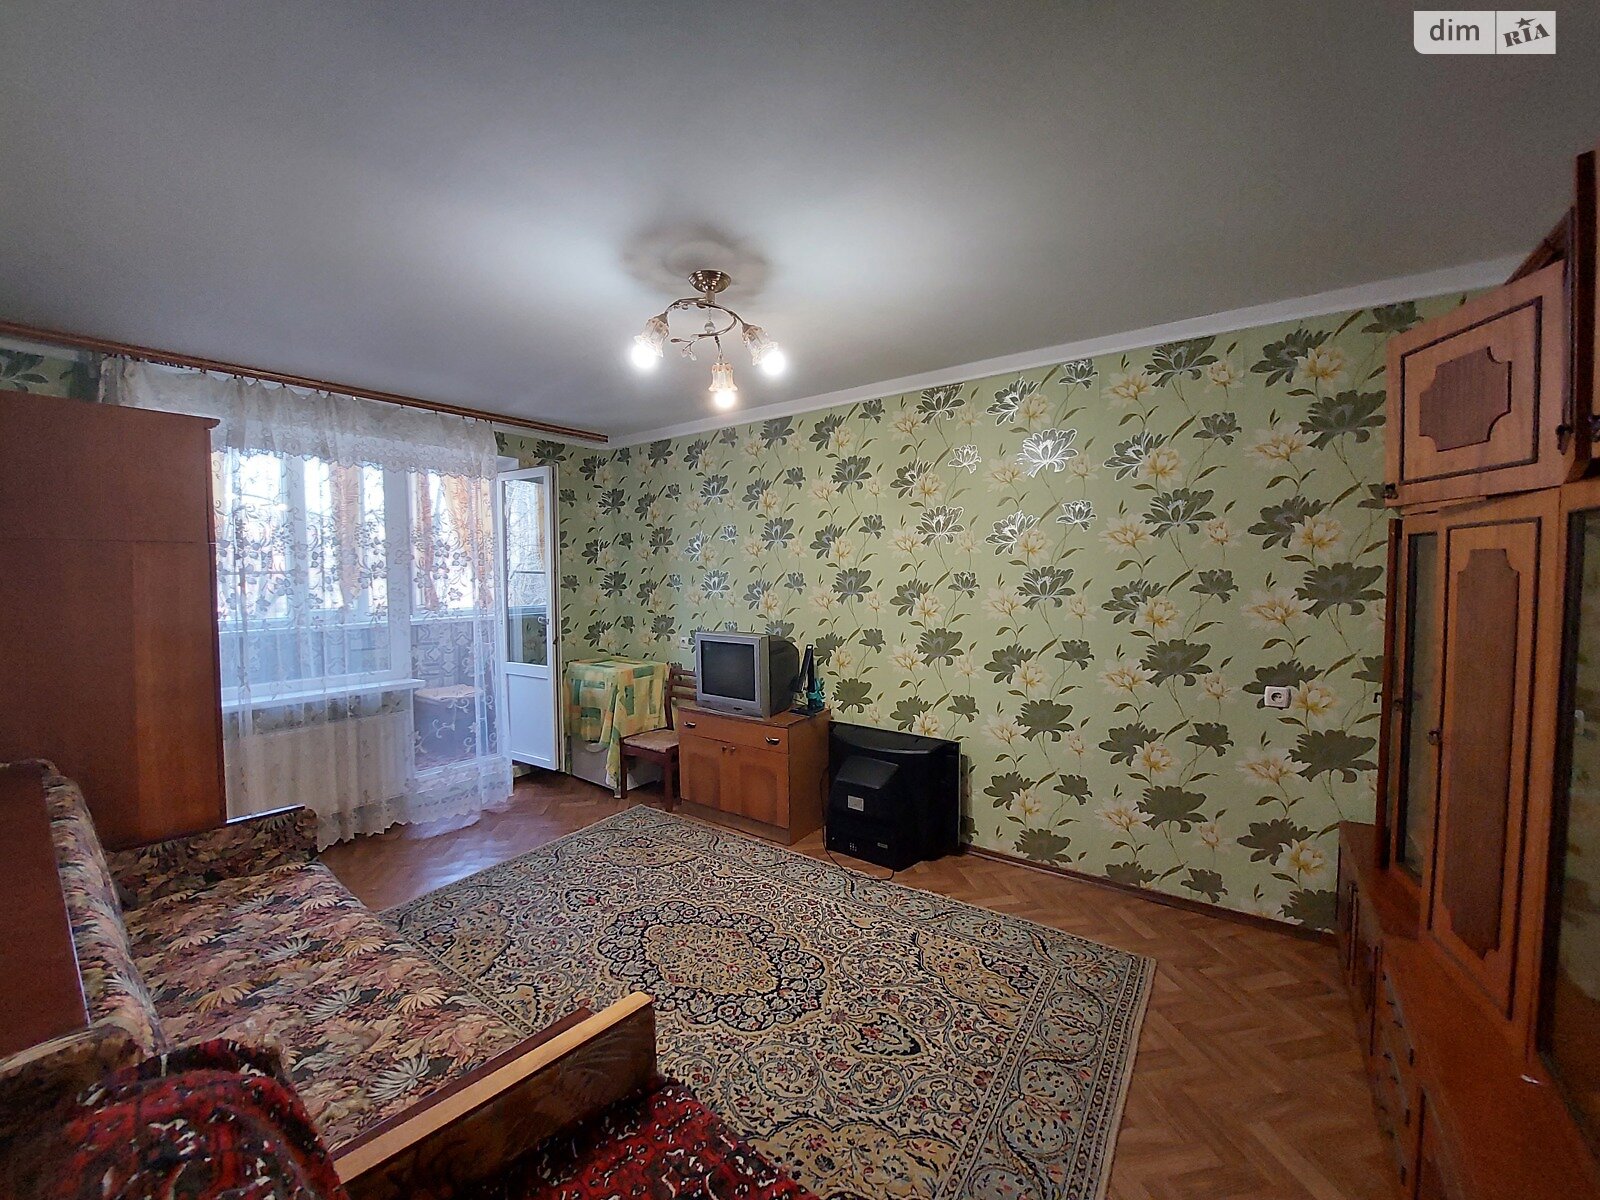 Продажа однокомнатной квартиры в Кременчуге, на ул. Киевская 36, район Нагорная часть фото 1